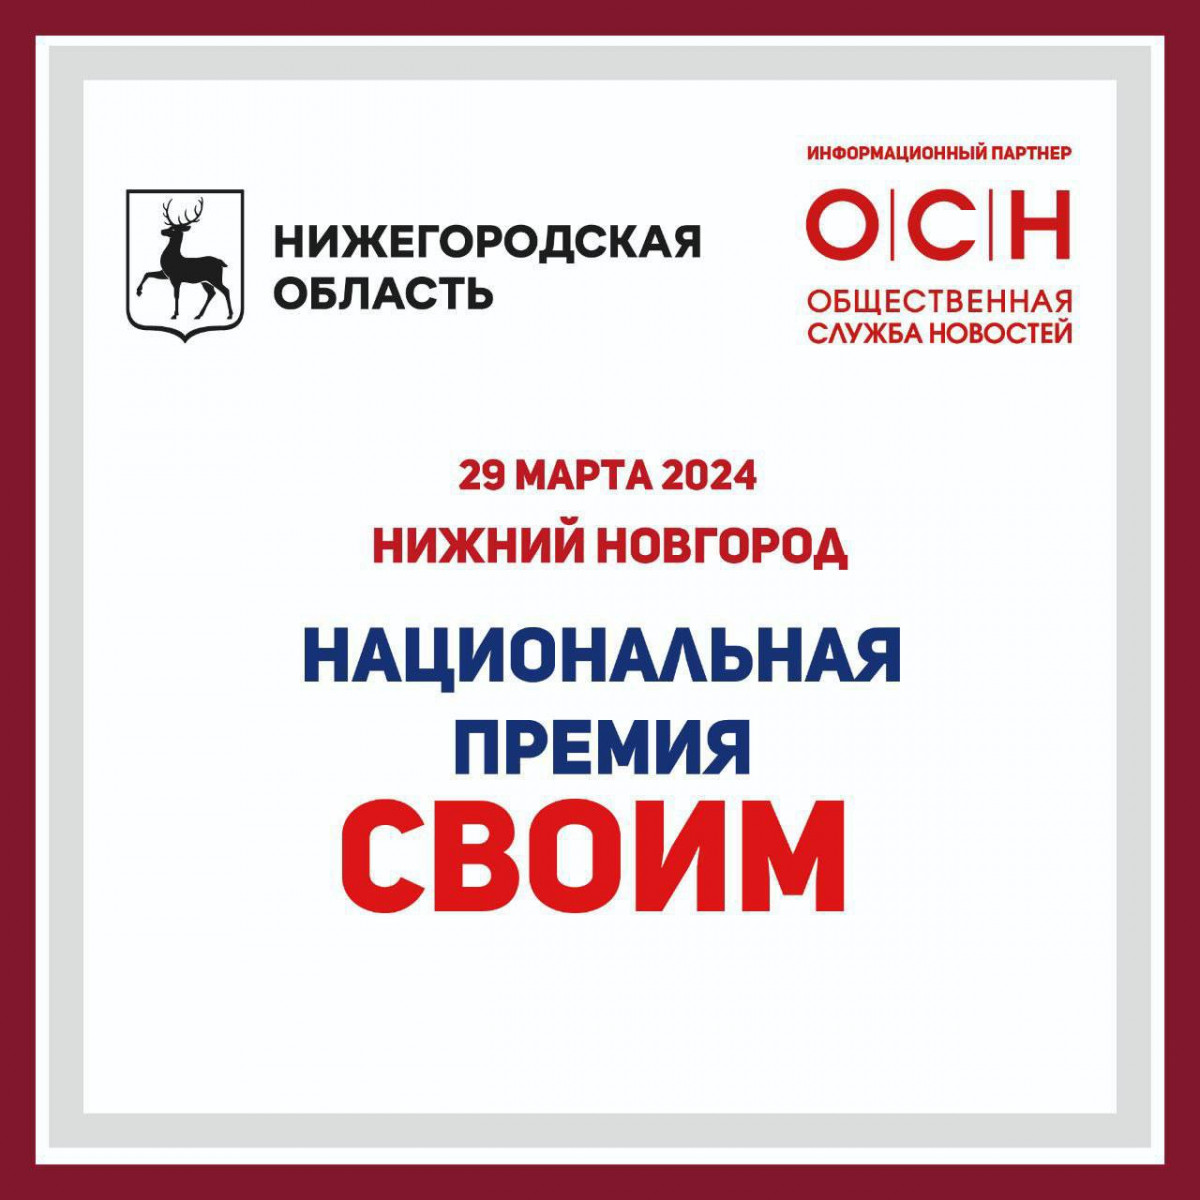 Торжественная церемония вручения премии «СВОИМ» состоится в Нижнем Новгороде